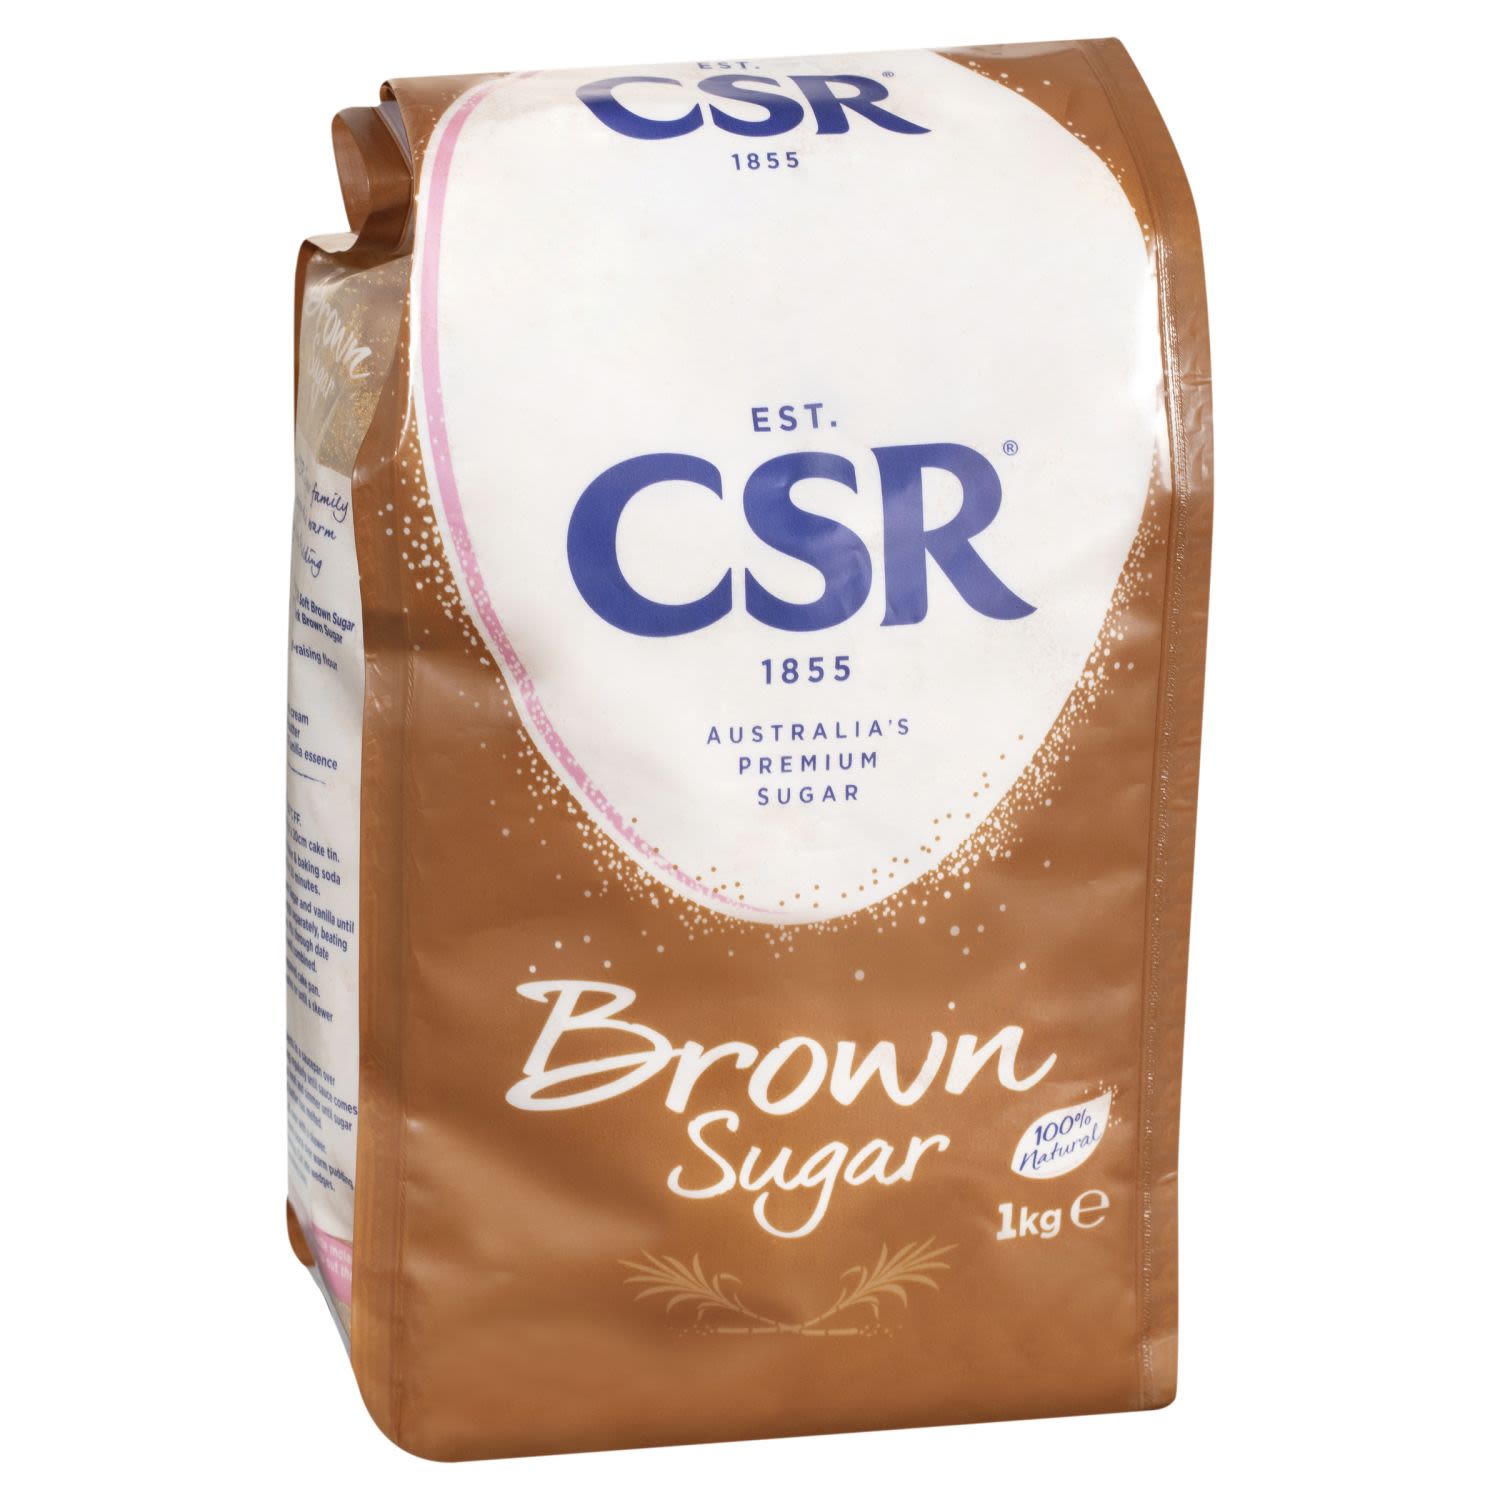 CSR Brown Sugar, 1 Kilogram